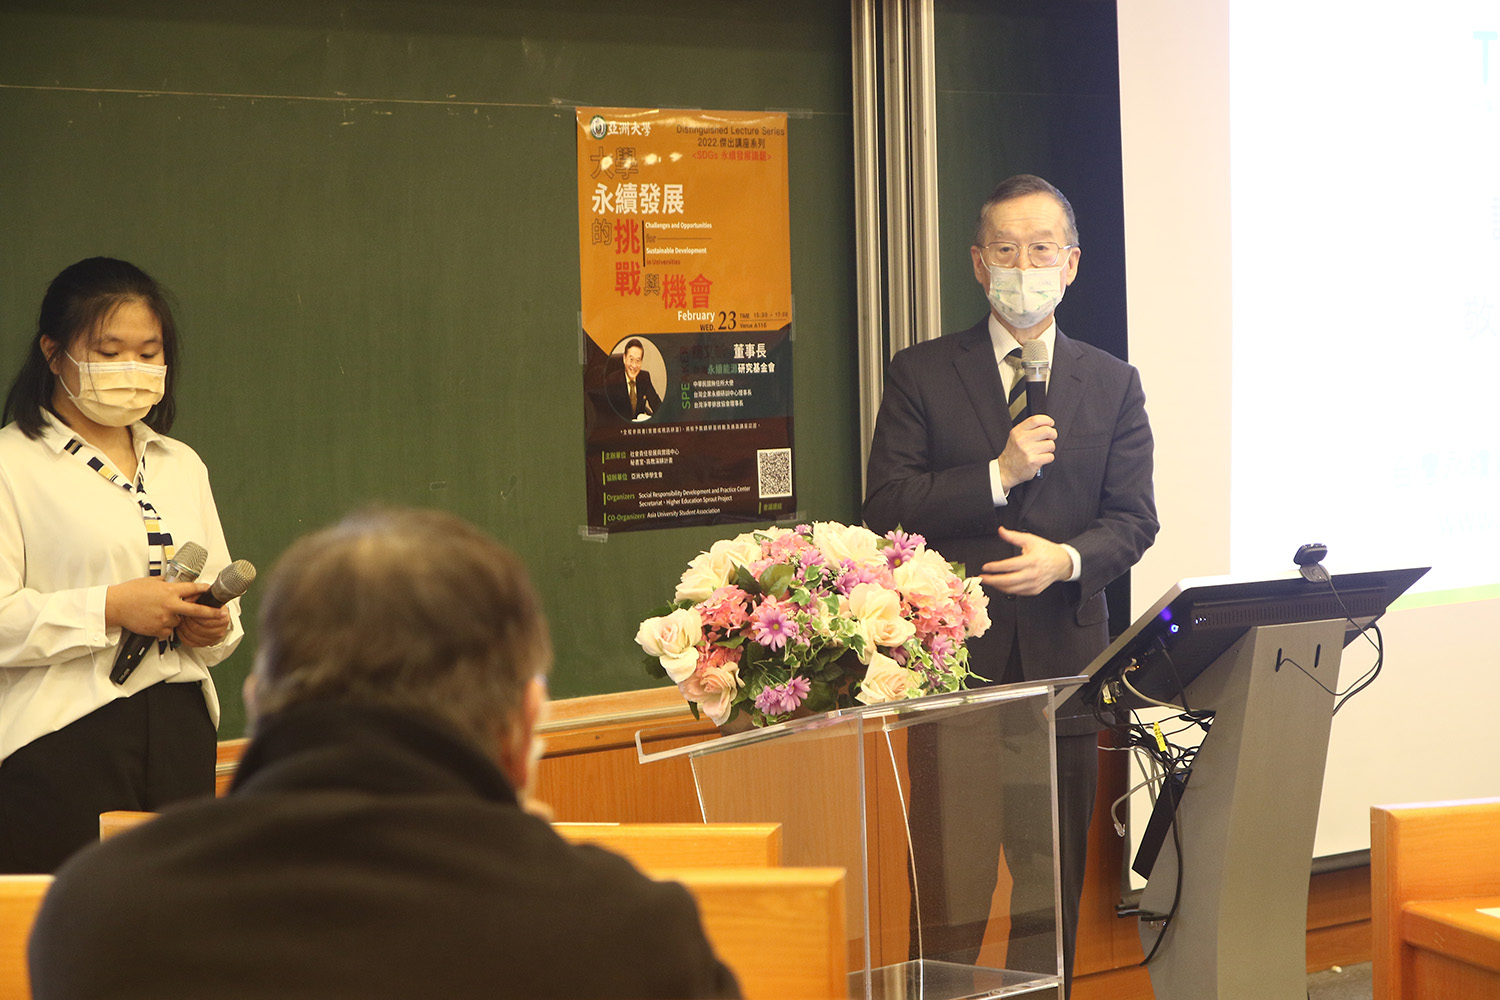 台灣永續能源研究基金會董事長簡又新博士(右)演講「大學永續發展的挑戰」，會中接受提問